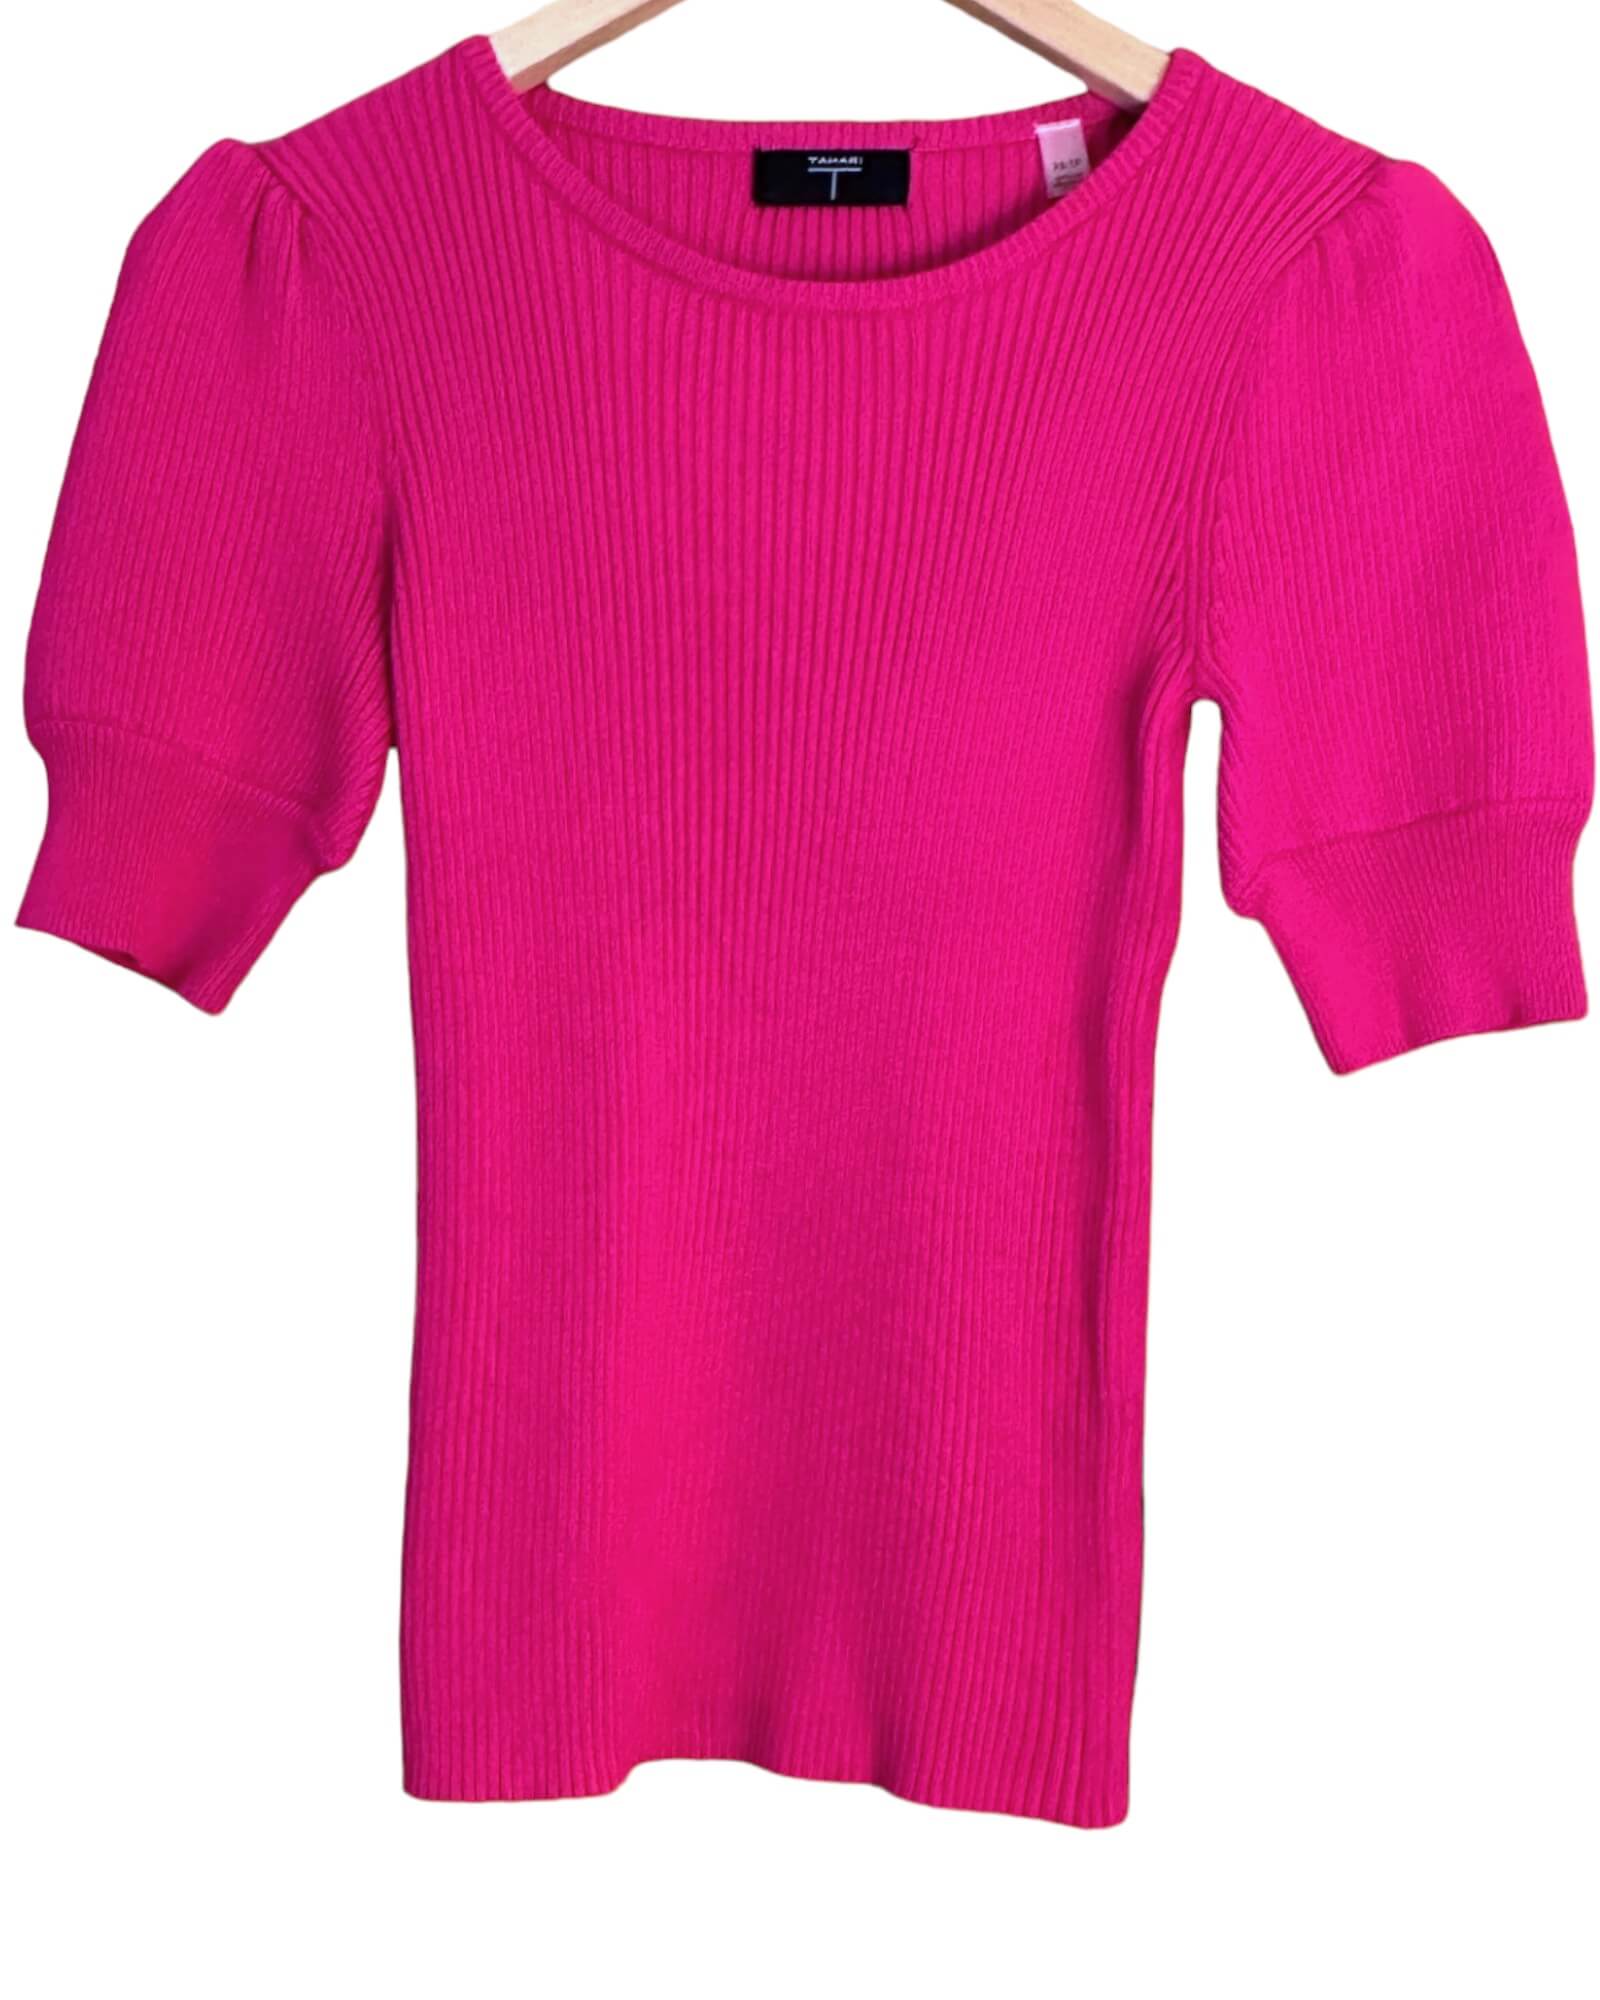 Bright Sprint T.TAHARI fascia pink lantern sleeve rip knit pullover sweater